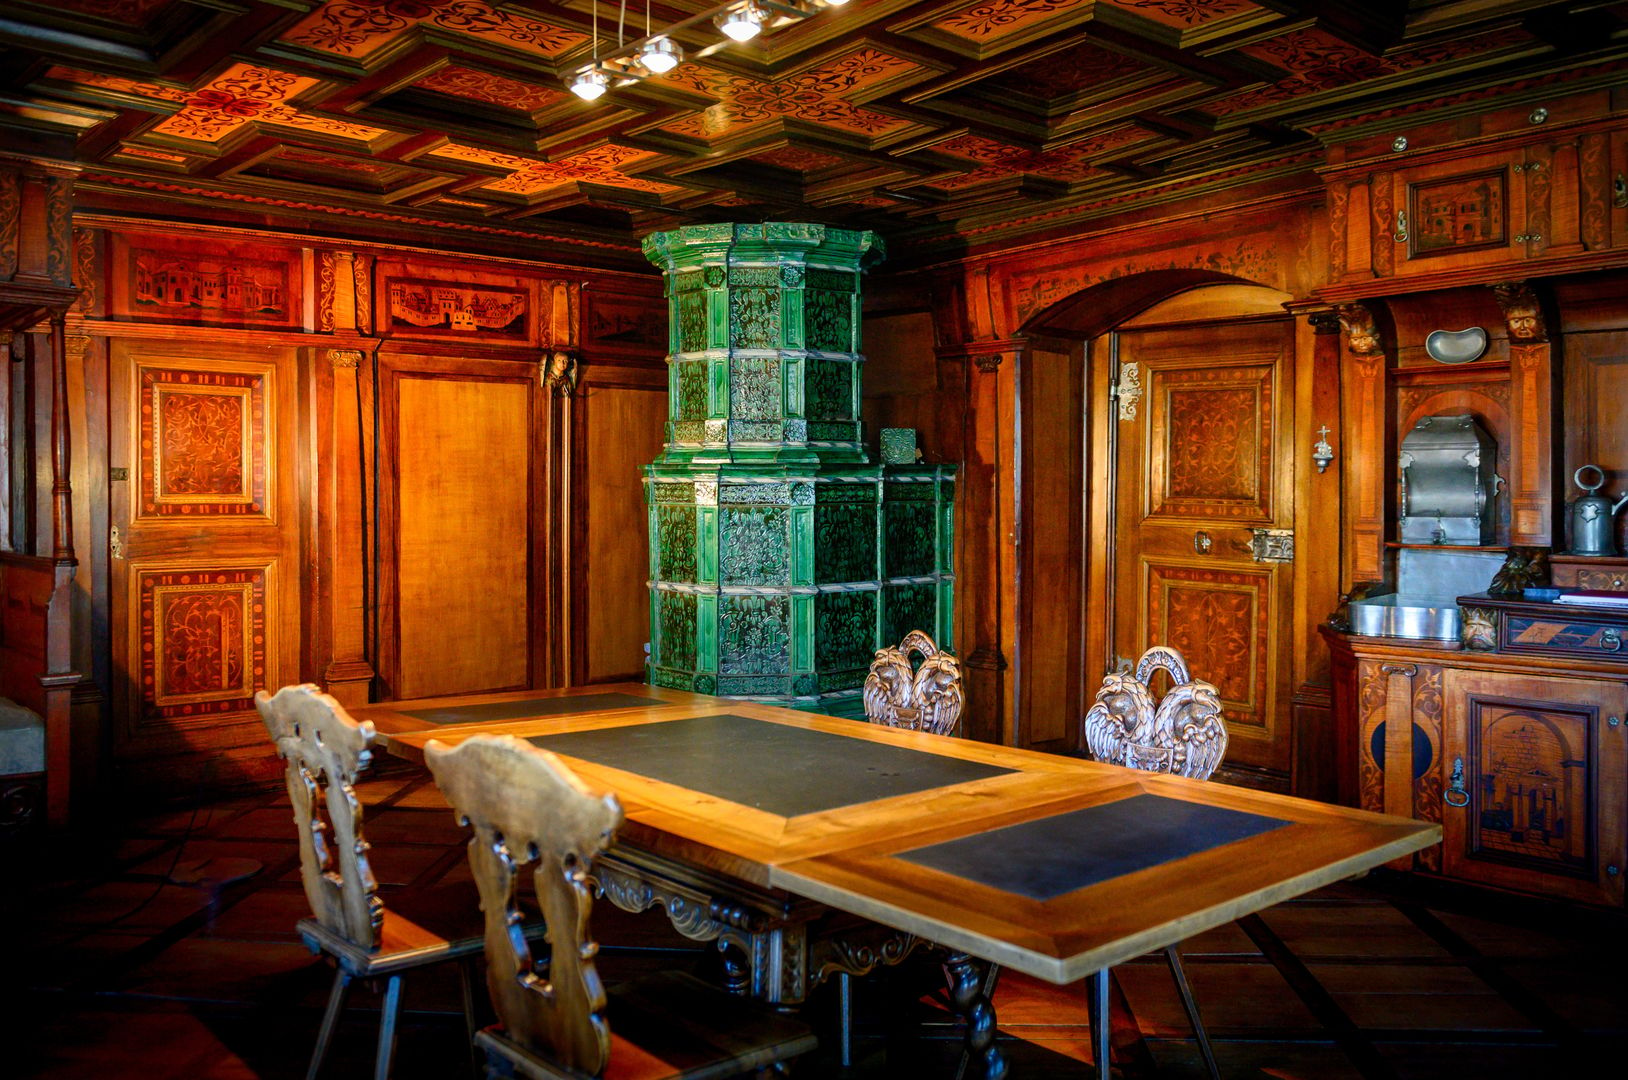 Zimmer aus Holz mit grünem Kamin, Tisch um den 4 Stühle stehen